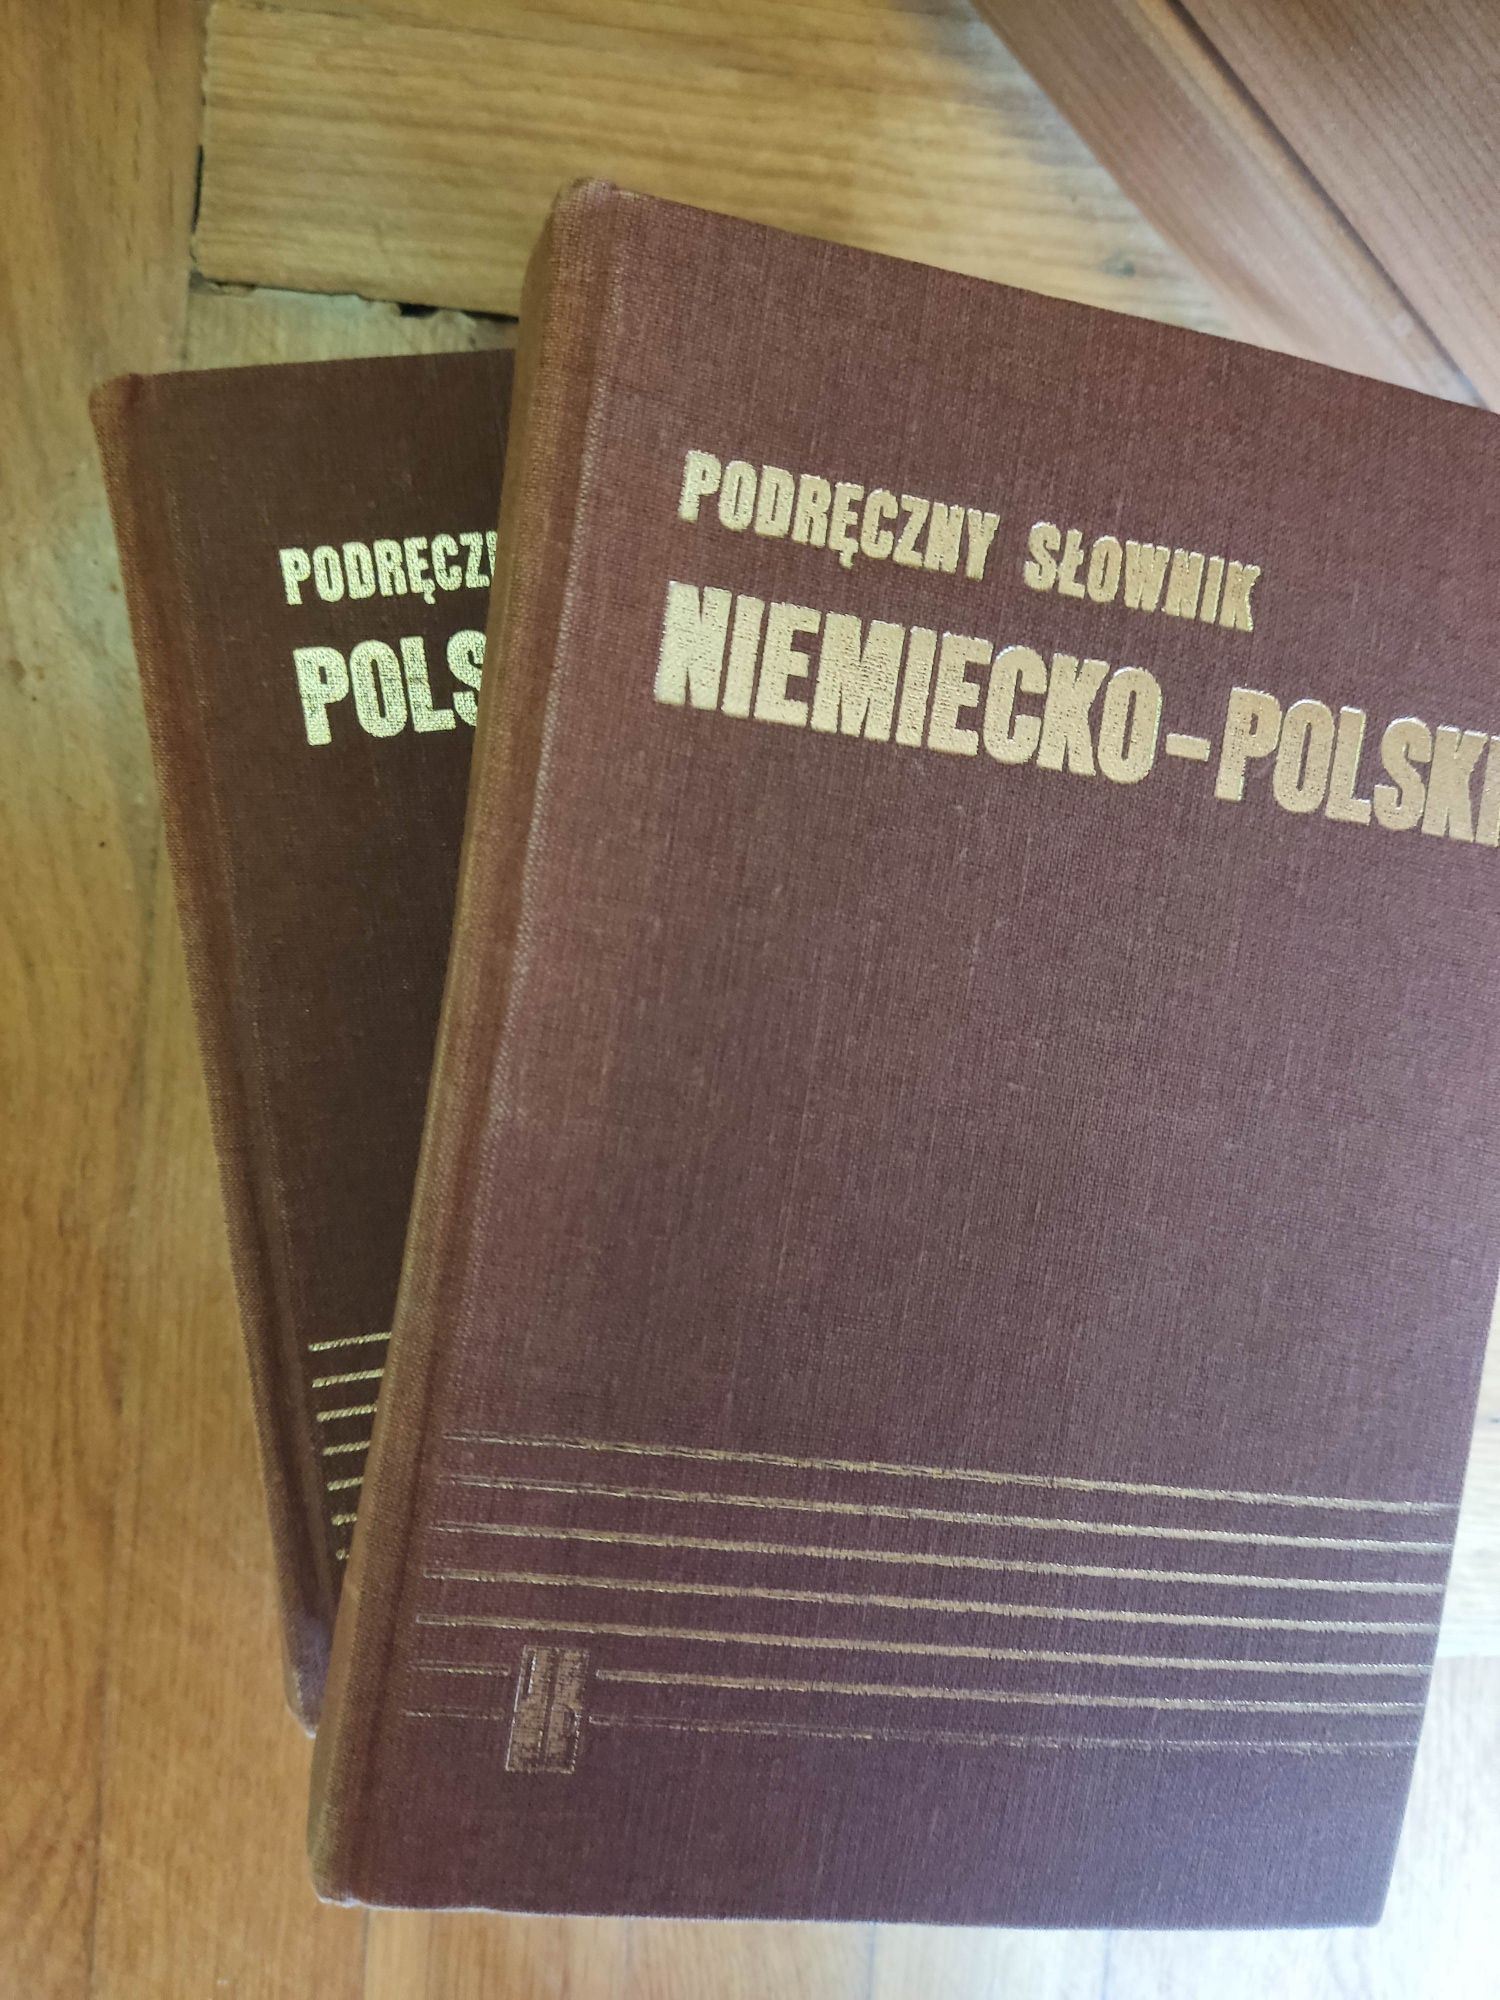 Podręczny słownik niemiecko- polski PW 1990 dwa tomy